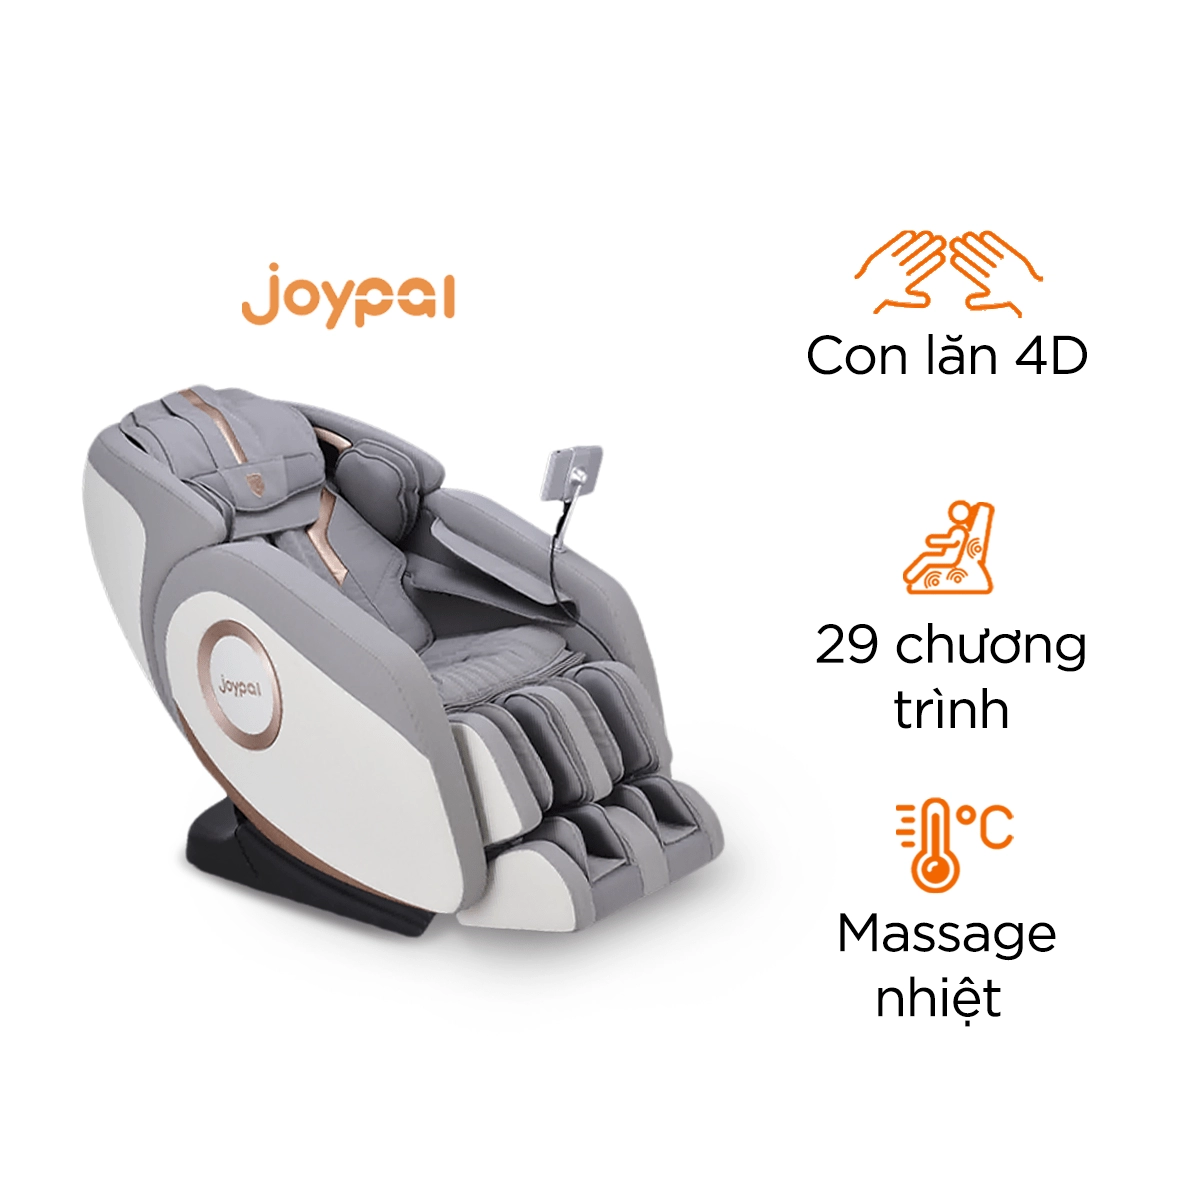 Công nghệ và tính năng của Ghế Massage Xiaomi AI Joypal Monster V1 Max 5651B